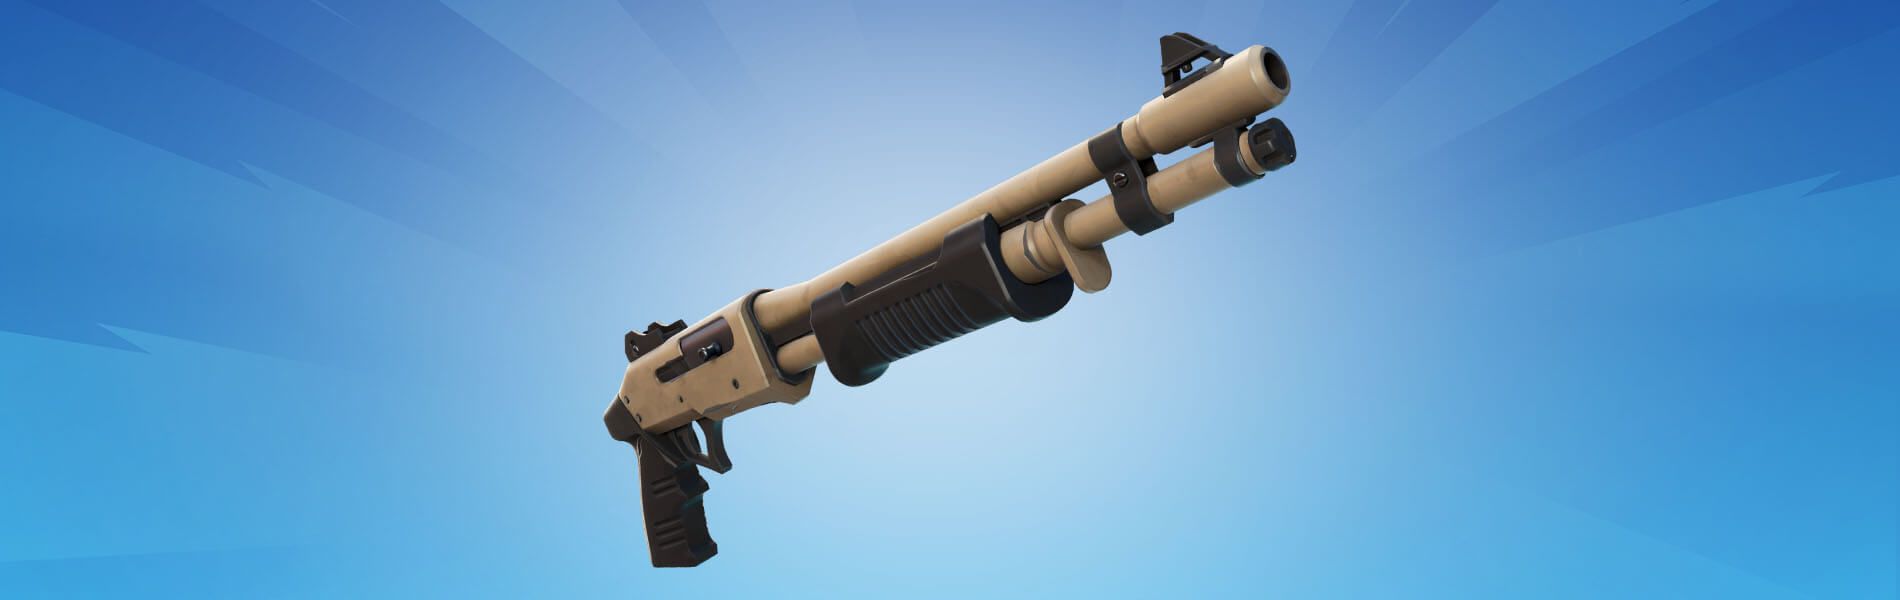 fortnite all new guns striker pump shotgun